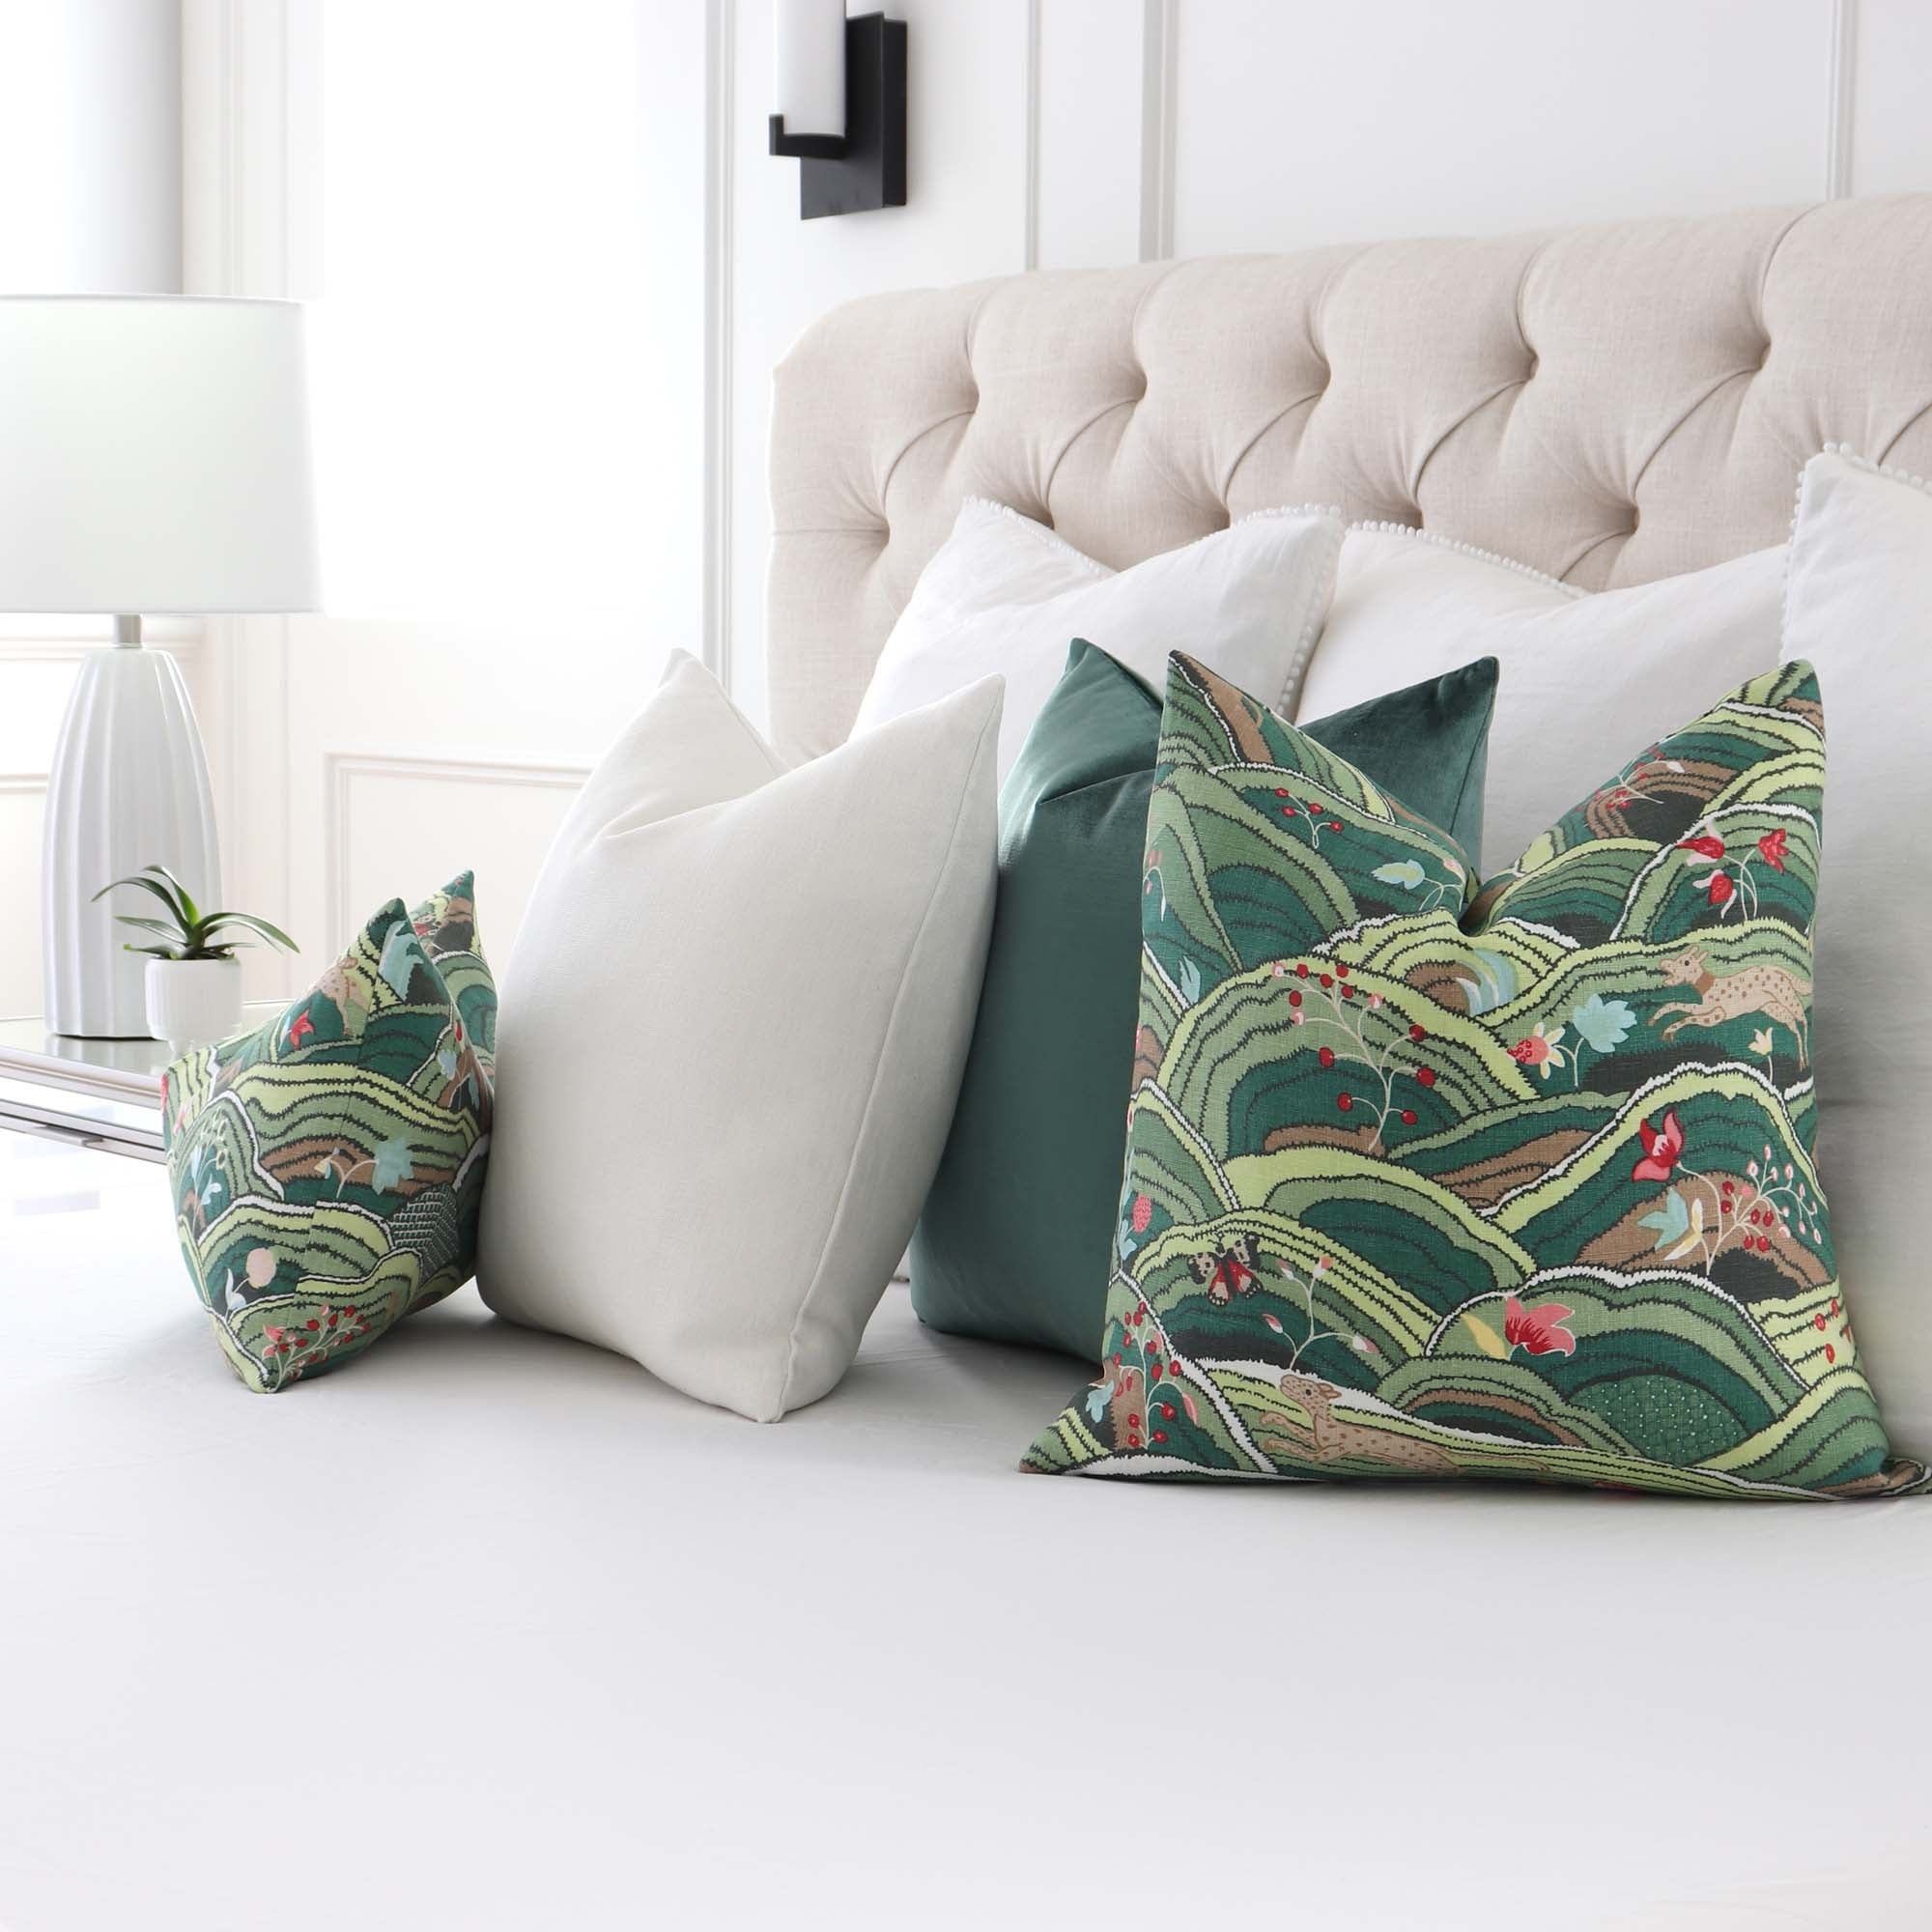 Schumacher Rolling Hills Green Luxury Designer Throw Pillow Cover in Bedroom